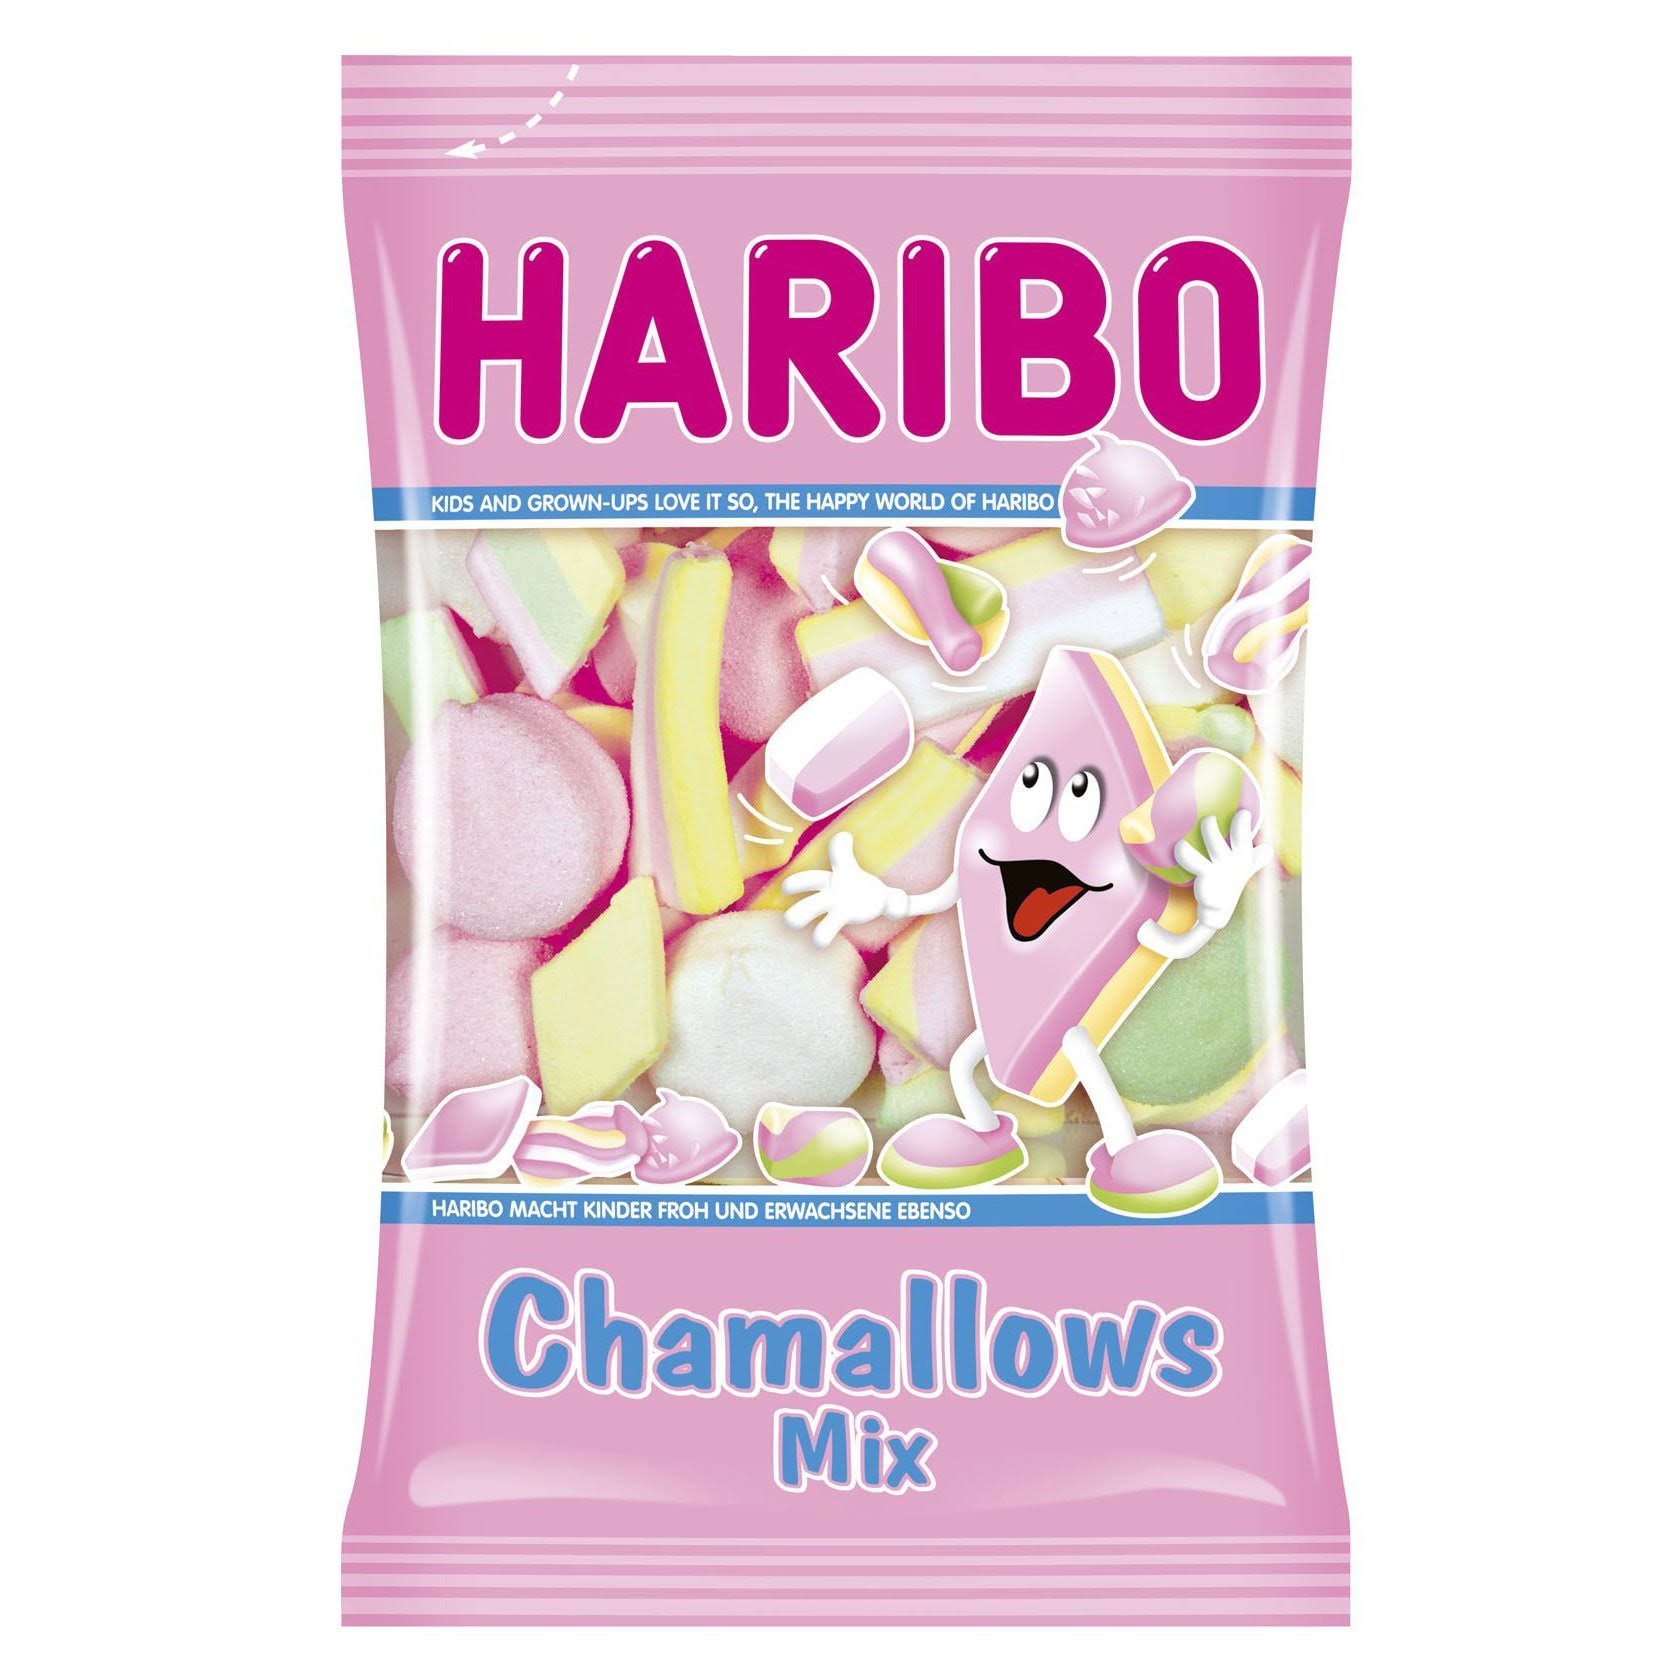 Haribo Chamallows Mix Candy - 225g